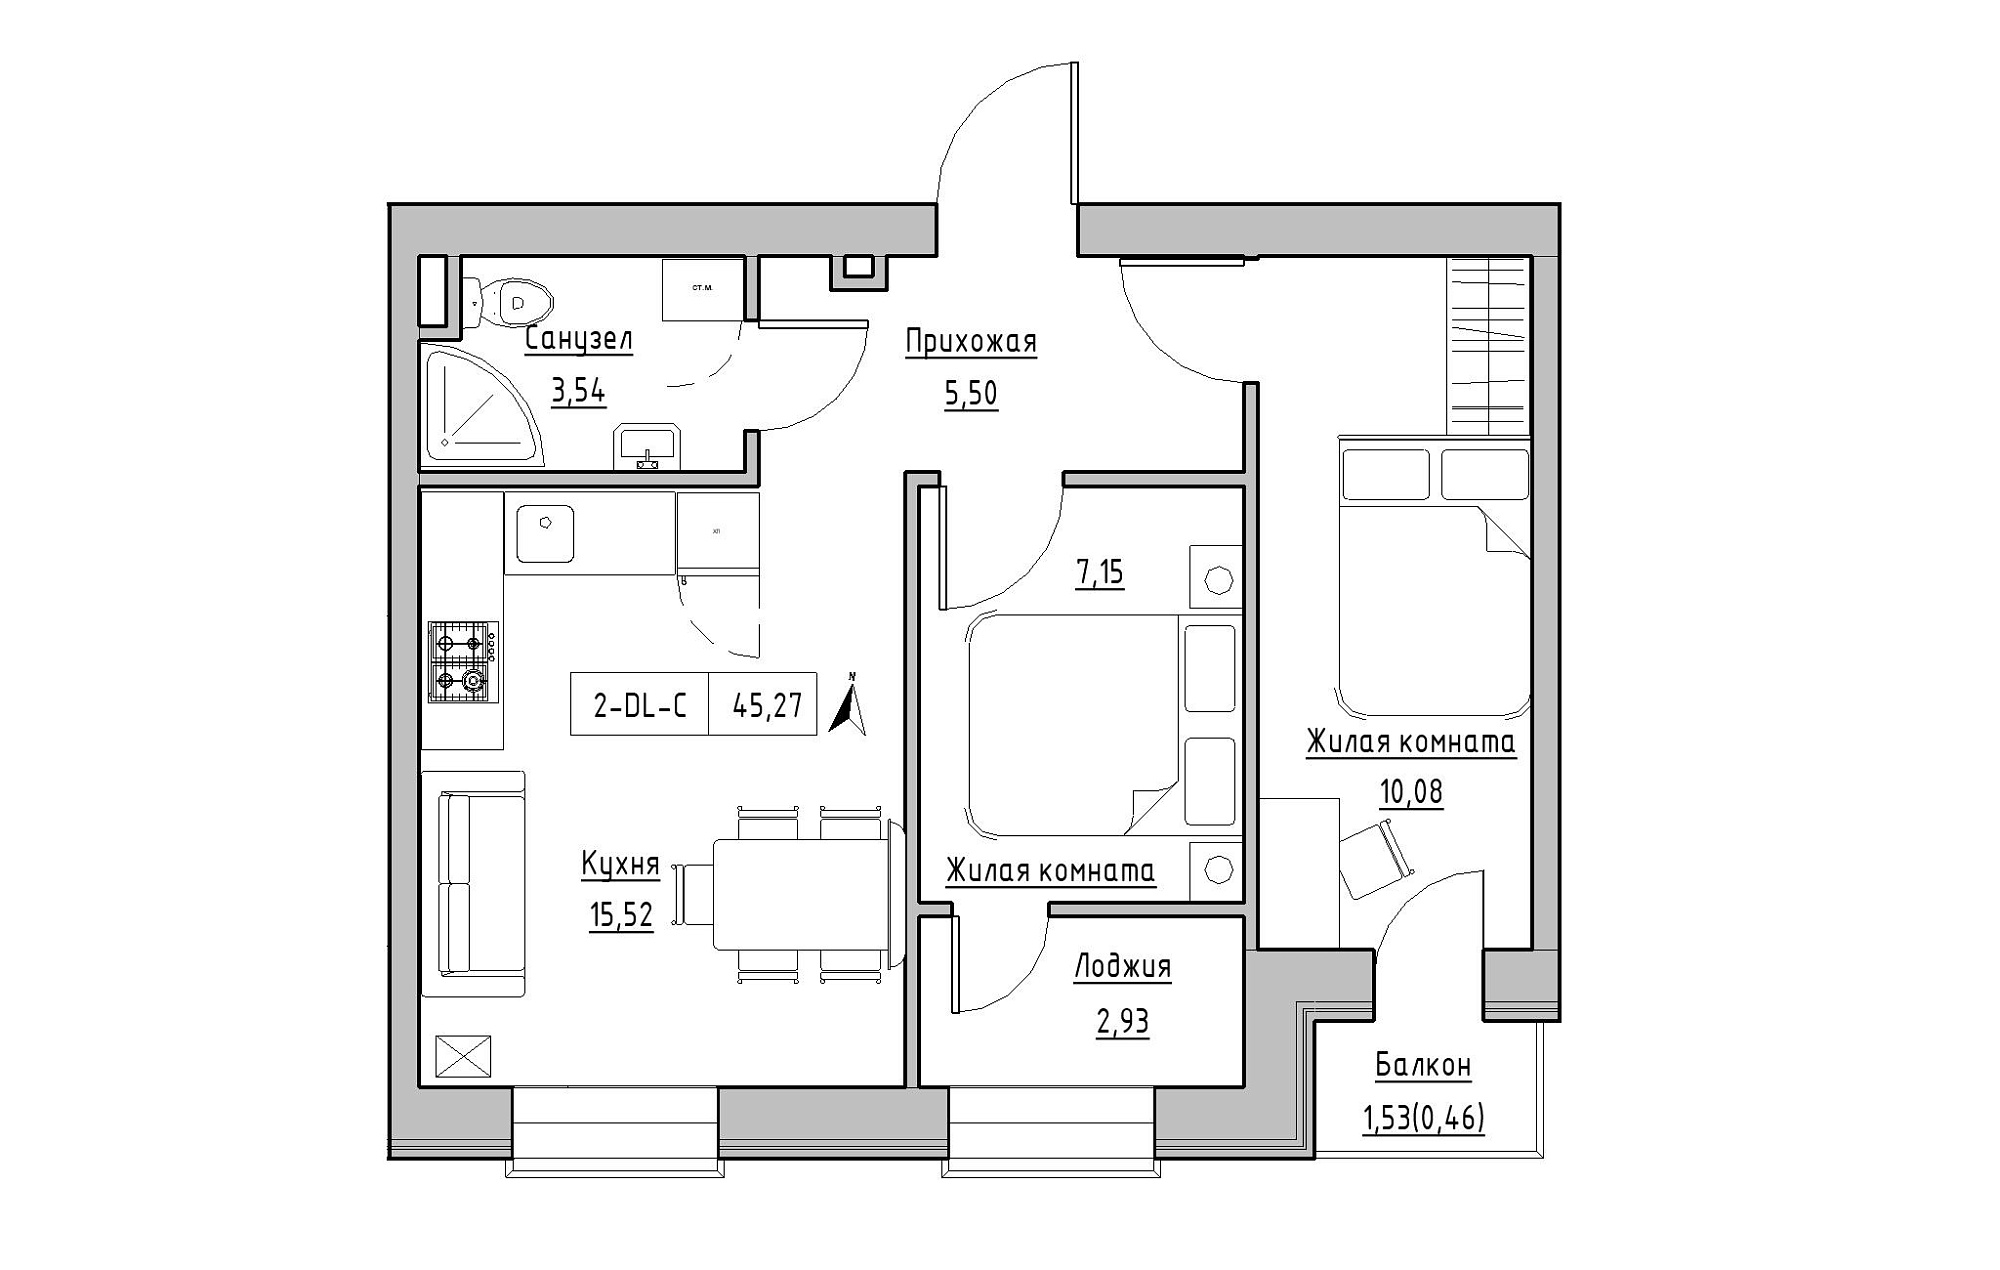 Планировка 2-к квартира площей 45.27м2, KS-019-04/0008.